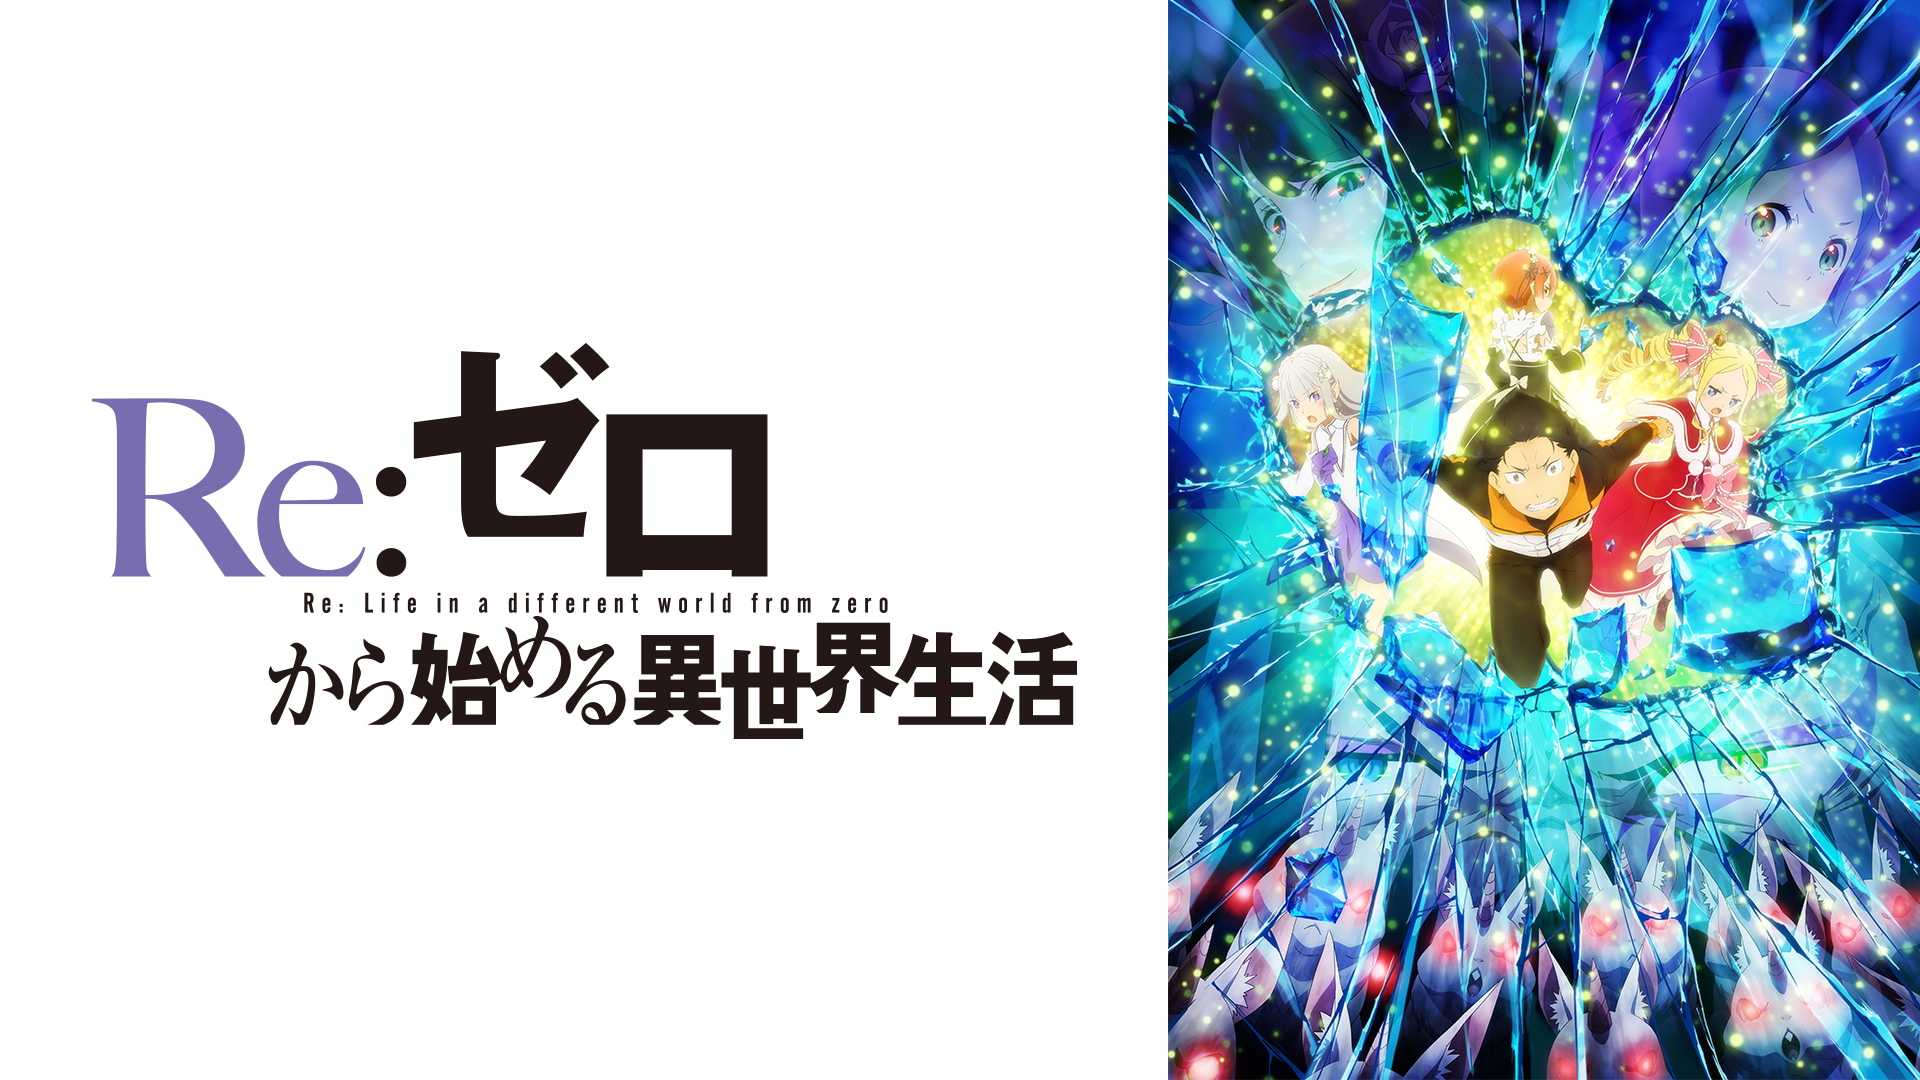 Re ゼロから始める異世界生活 2nd Season アニメ 無料で動画 見逃し配信を見るなら Abemaビデオ